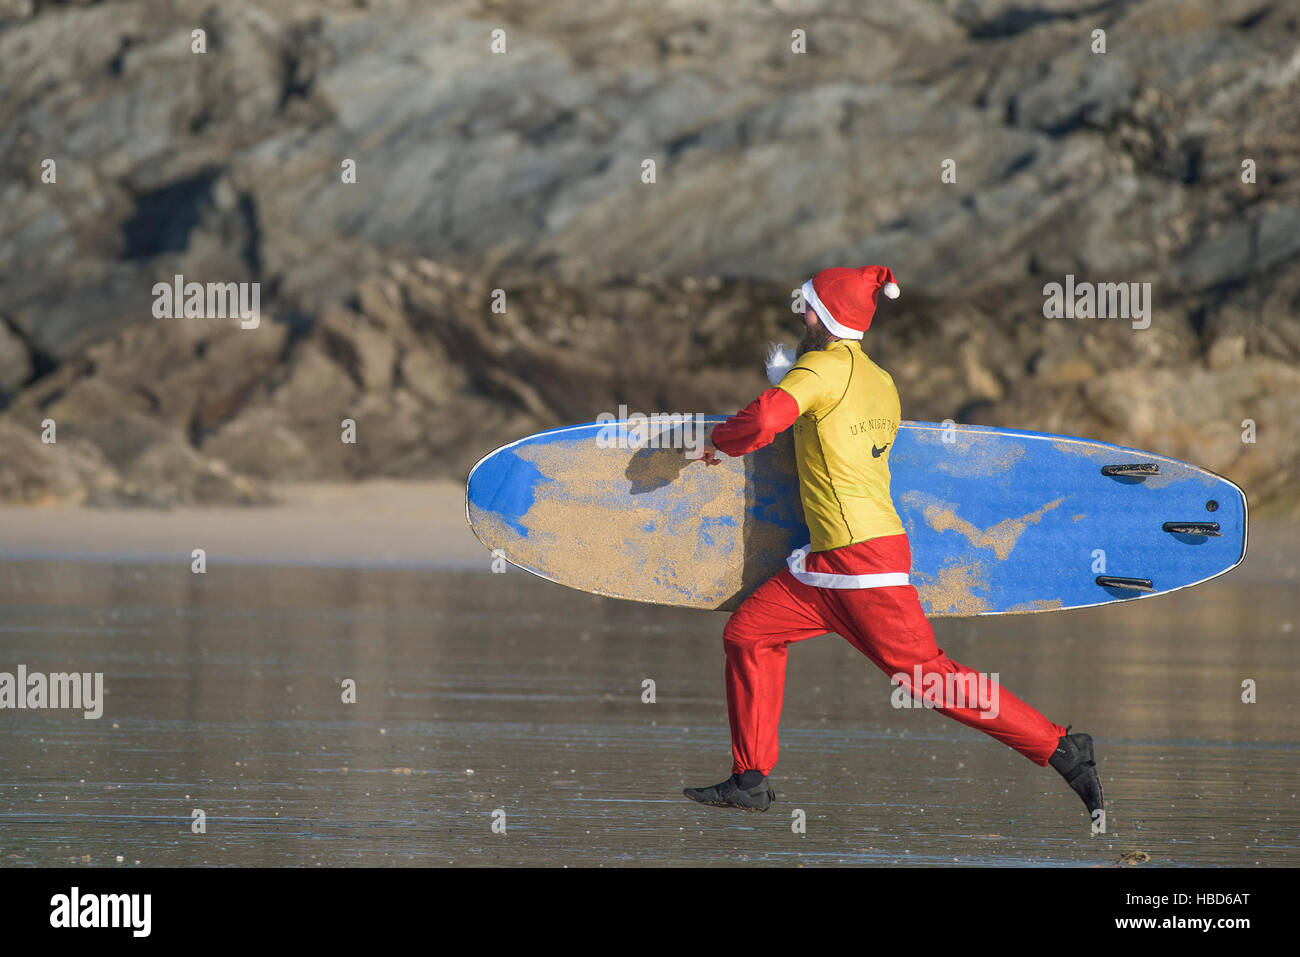 Un surf Santa s'exécute dans une course au début de la collecte de fonds Santa Surf sur une concurrence très frileux dans la plage de Fistral Newquay, Cornwall. UK. Banque D'Images